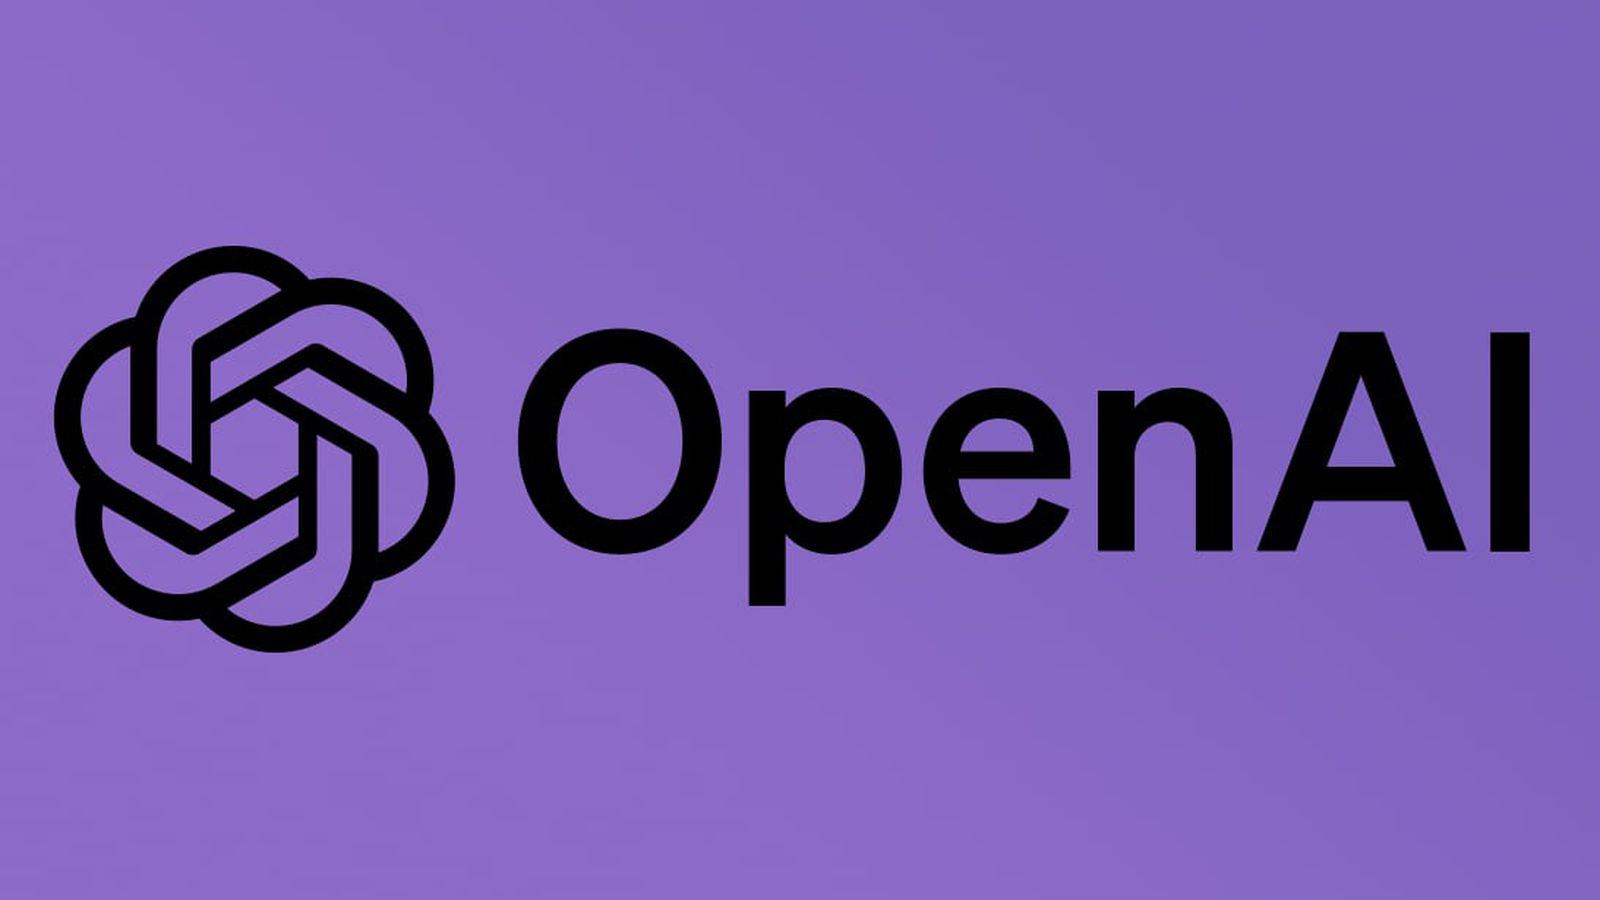 Phil Schiller de Apple se desempeñará como observador de la junta de OpenAI como parte del acuerdo de IA de iOS 18 – Título SEO en Español: «Phil Schiller de Apple se une a OpenAI como observador de la junta en acuerdo de IA de iOS 18»